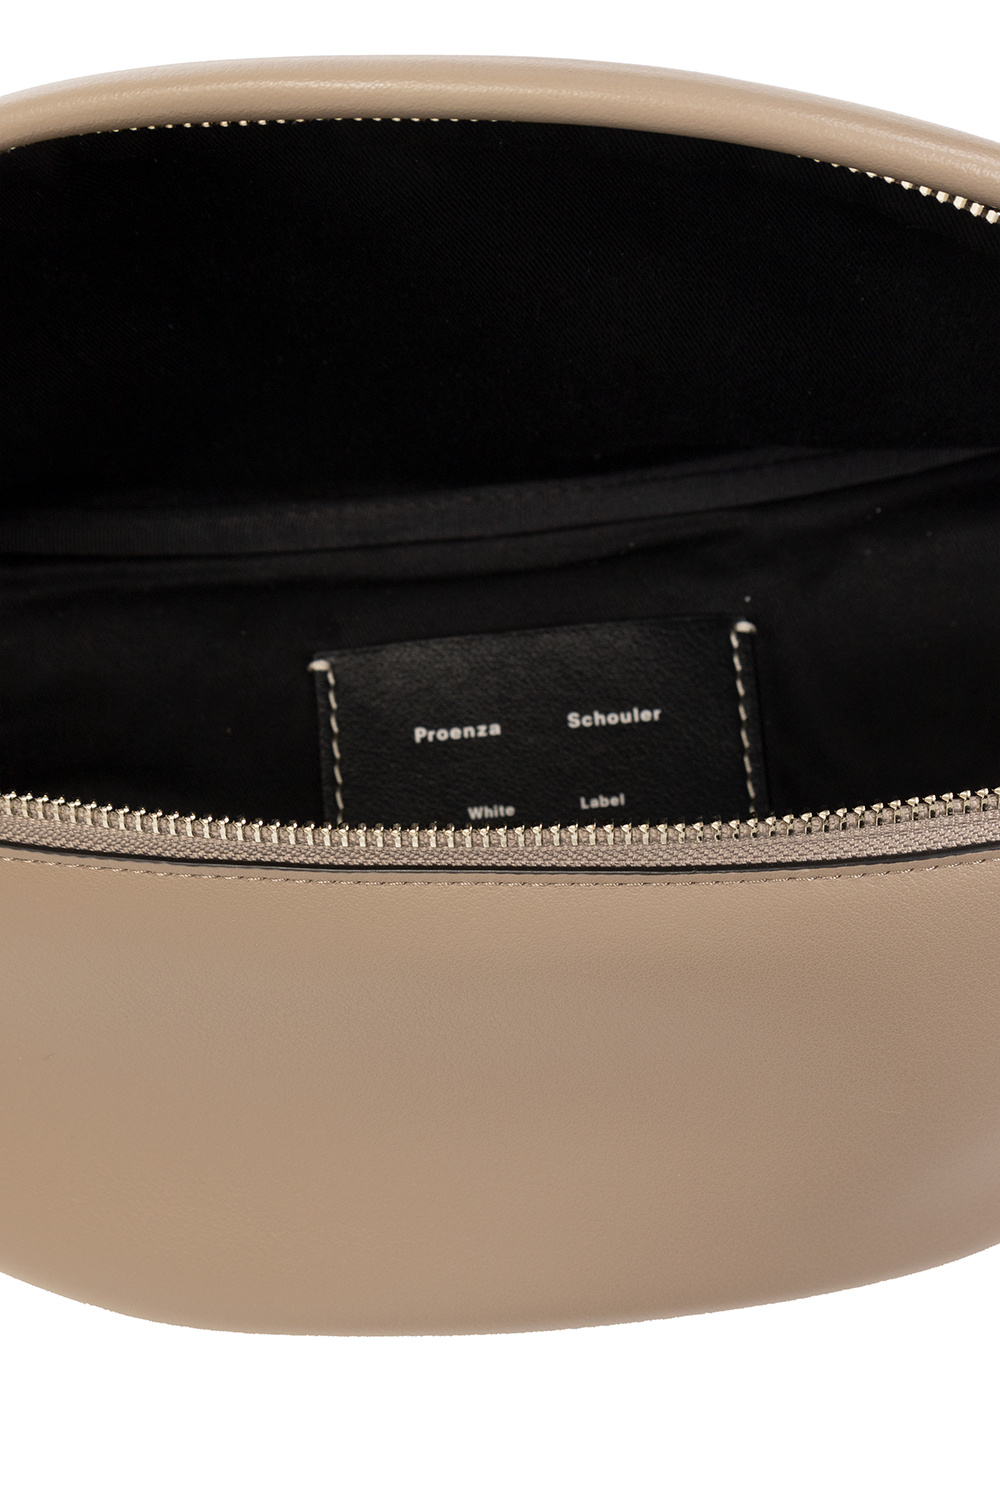 Proenza Schouler LONG Label ‘Stanton’ belt bag